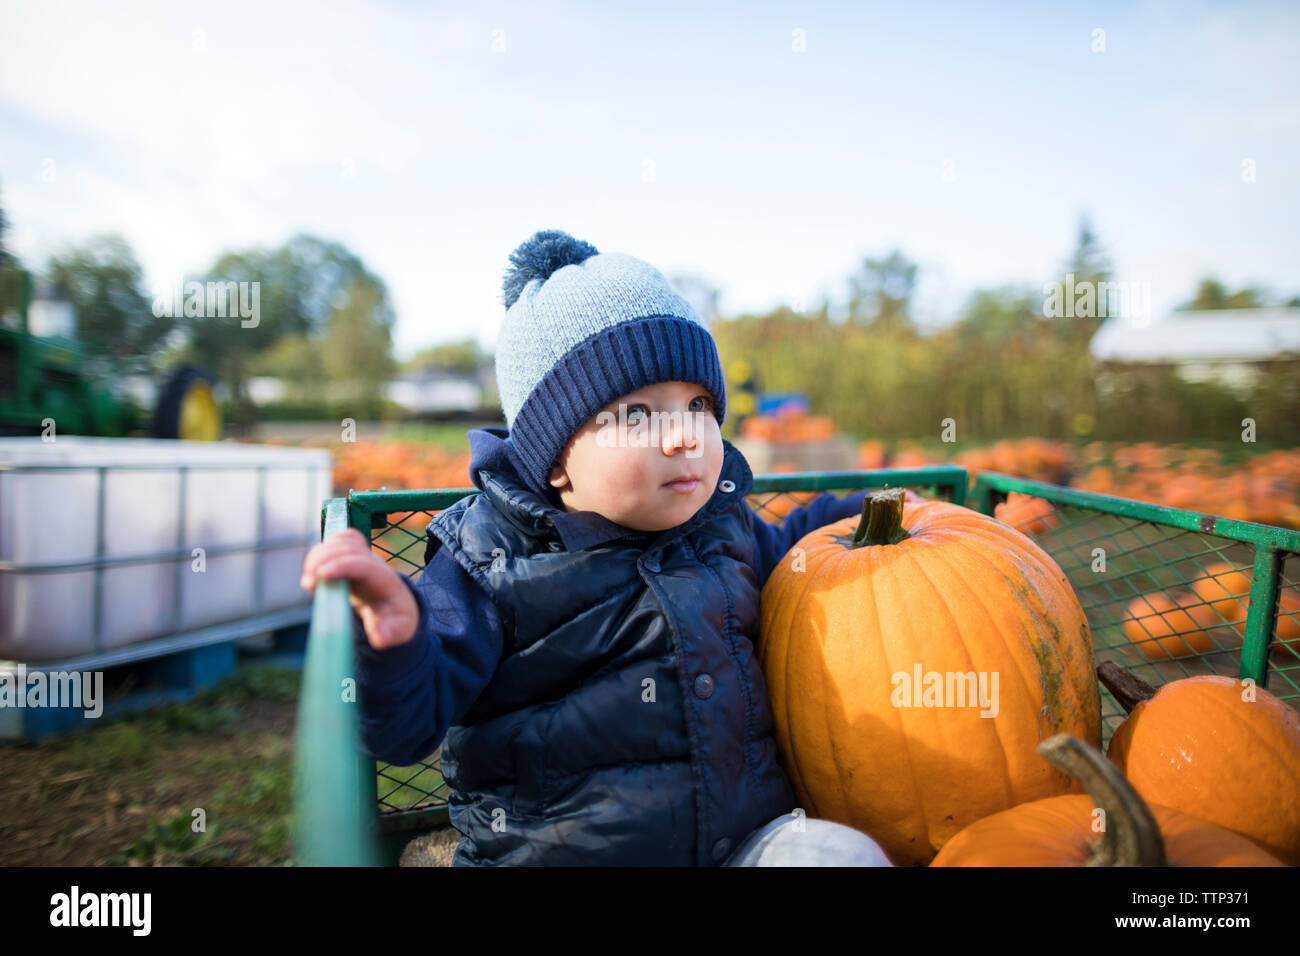 Cute Baby Boy with Pumpkins assis dans le panier contre ciel à farm Banque D'Images